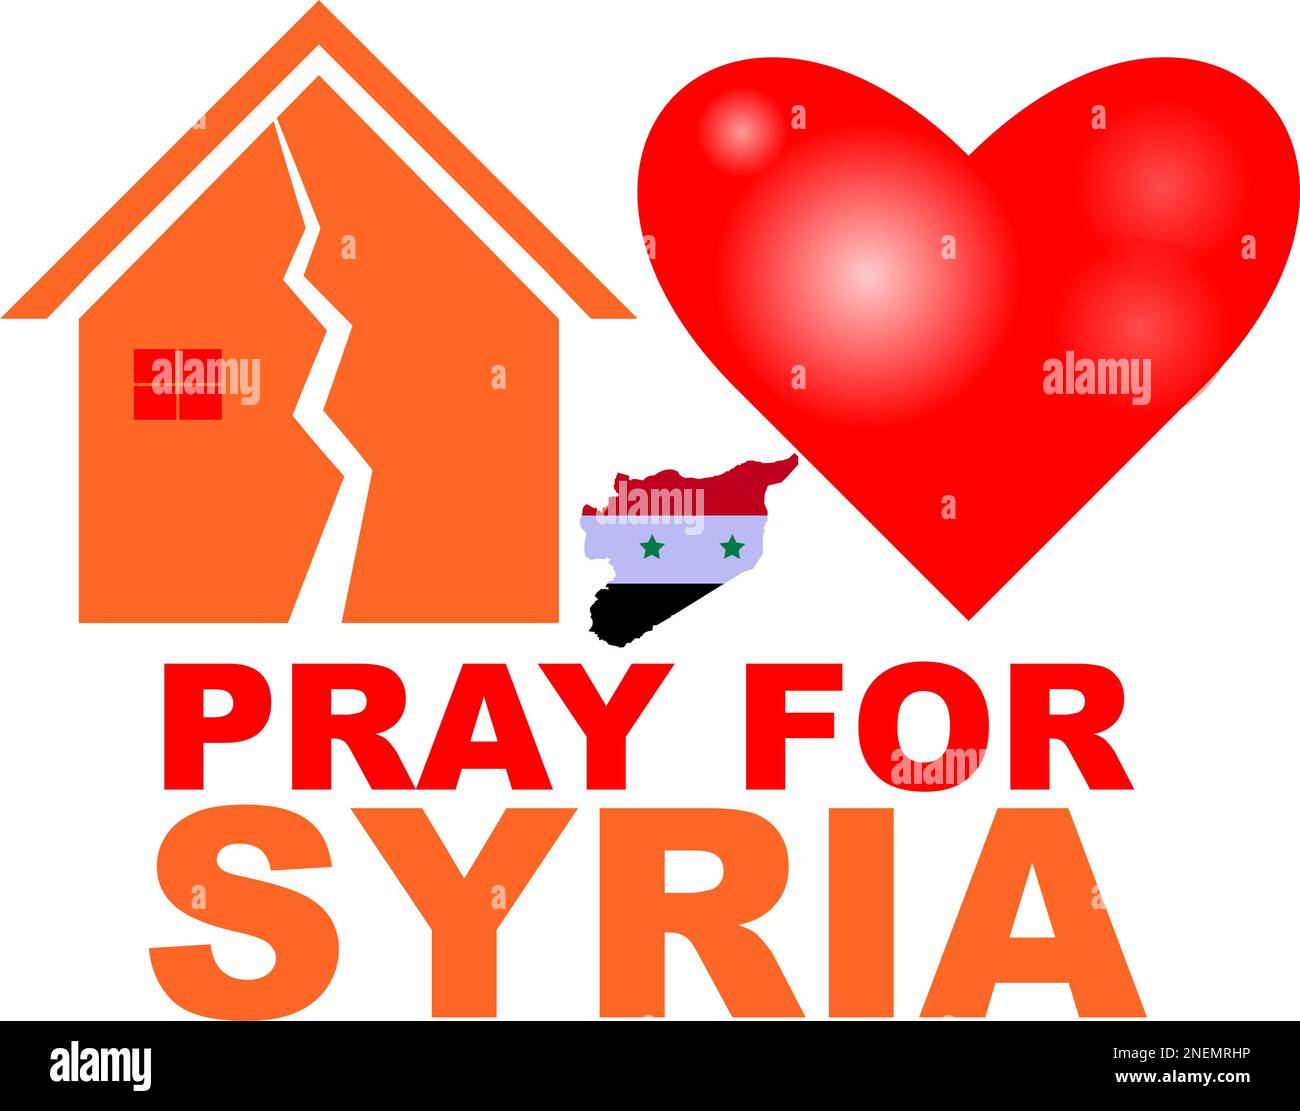 Bete für die Opfer der Erdbebenkatastrophe in Syrien, rette das Leben. Unterstützen und zeigen Sie Solidarität mit dem türkischen und syrischen Volk. Türkei-Karte, Syrien-Karte. Turkey Fl Stock Vektor